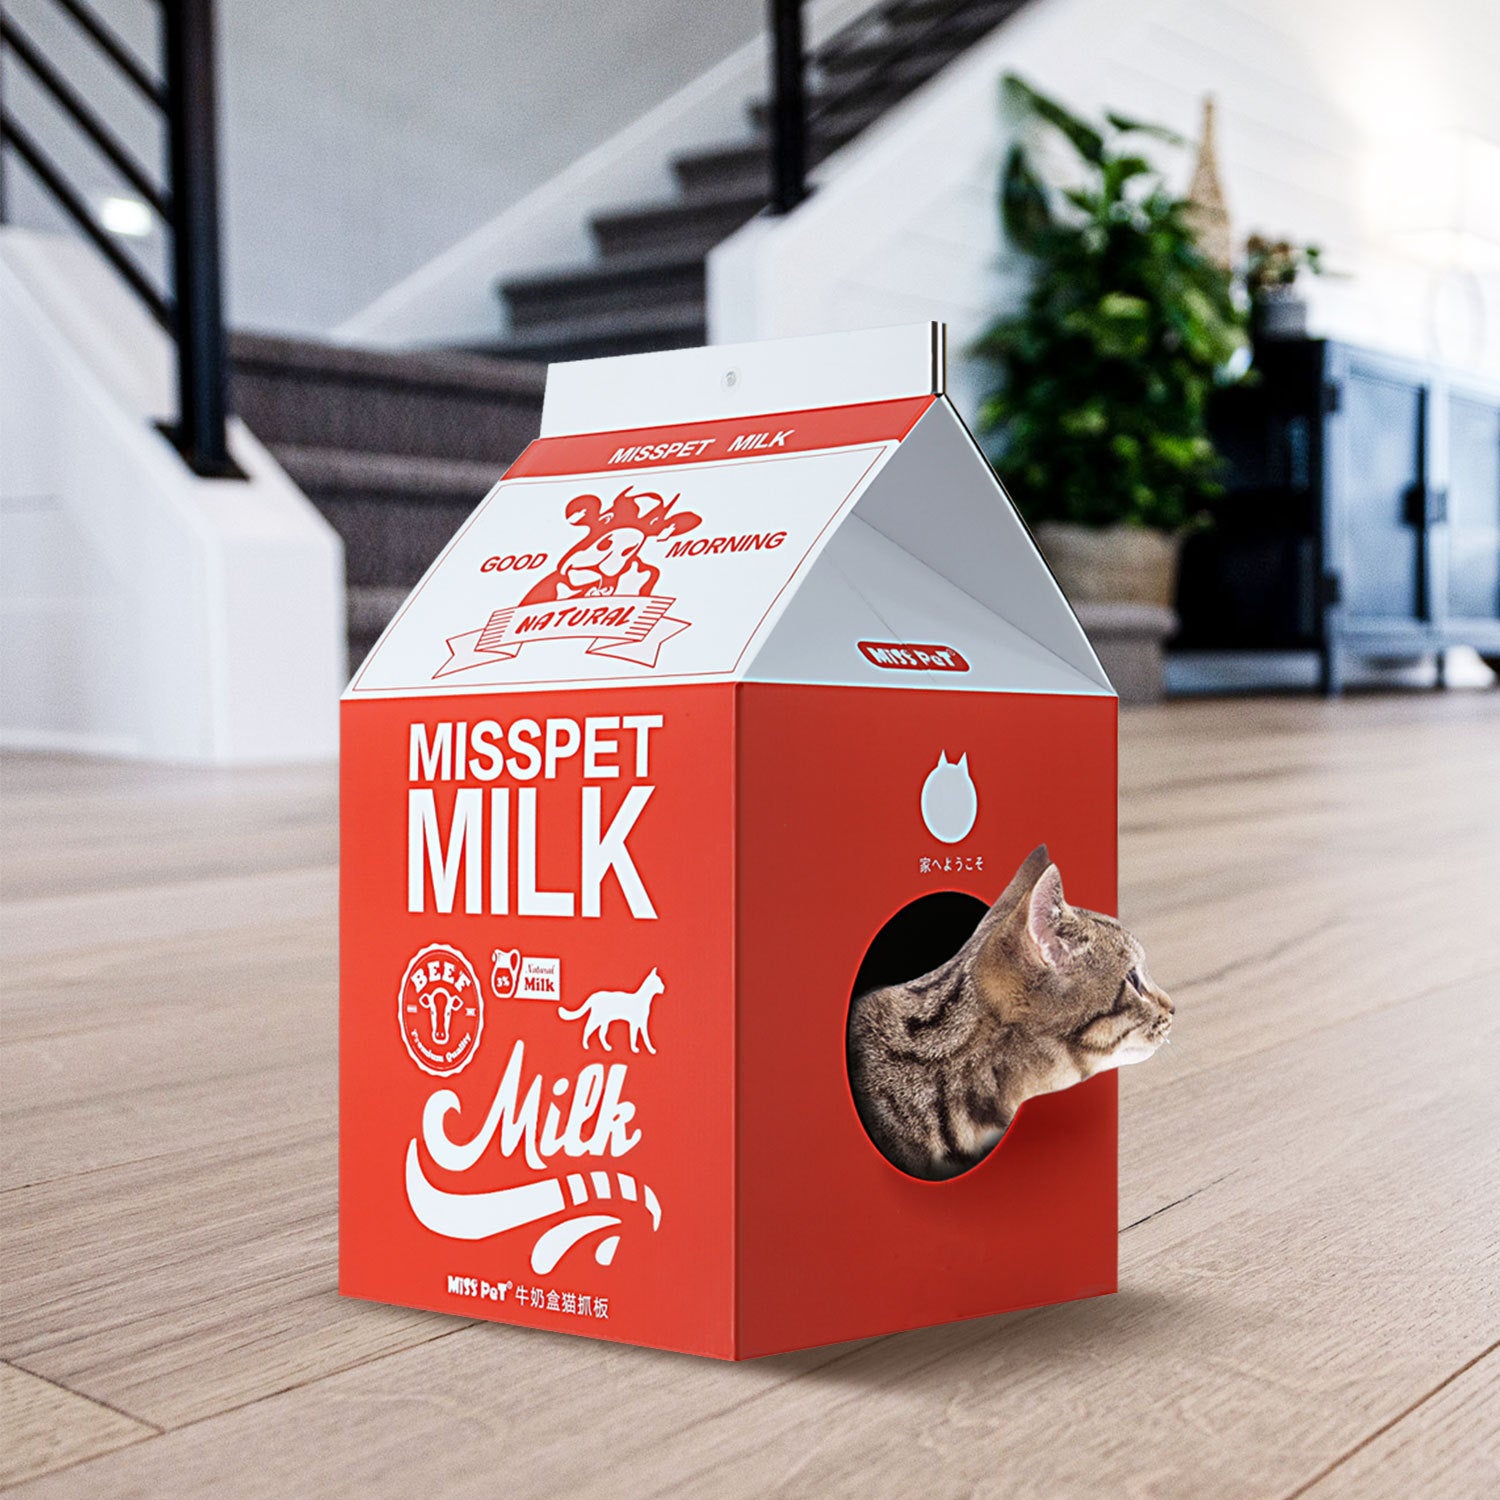 ScratchMe Cat Condo Scratcher Post Cardboard